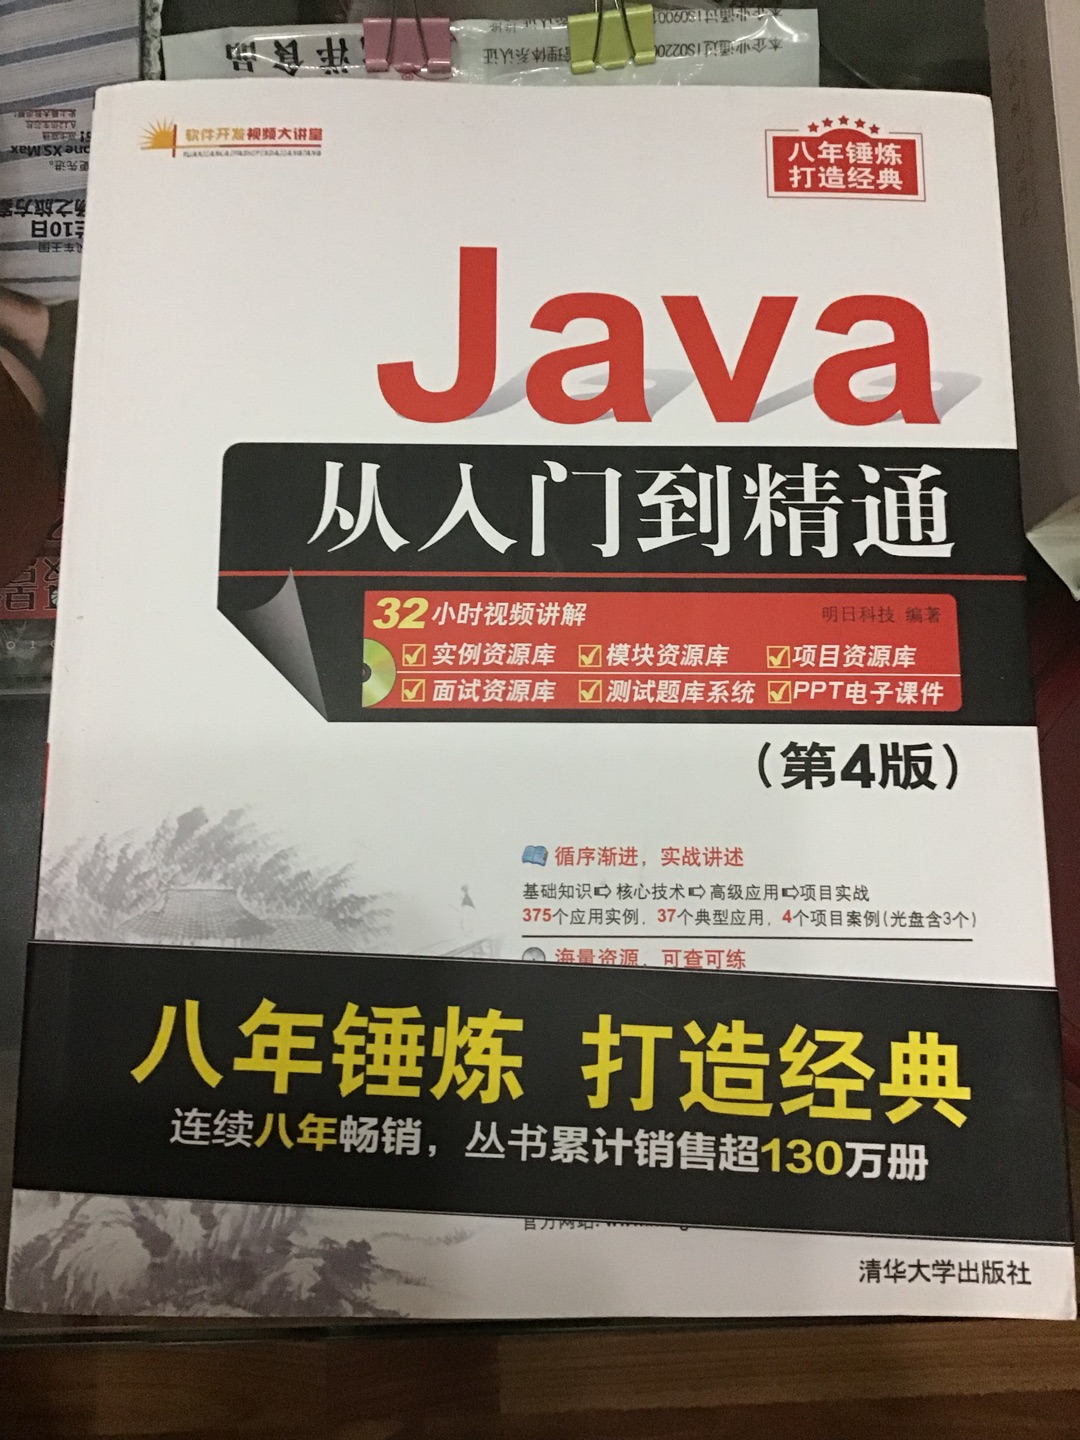 对编程很感兴趣，之前断断续续学过些其他语言，这次开始研究JAva, 希望能够入门，在买图书价廉物美，非常方便。